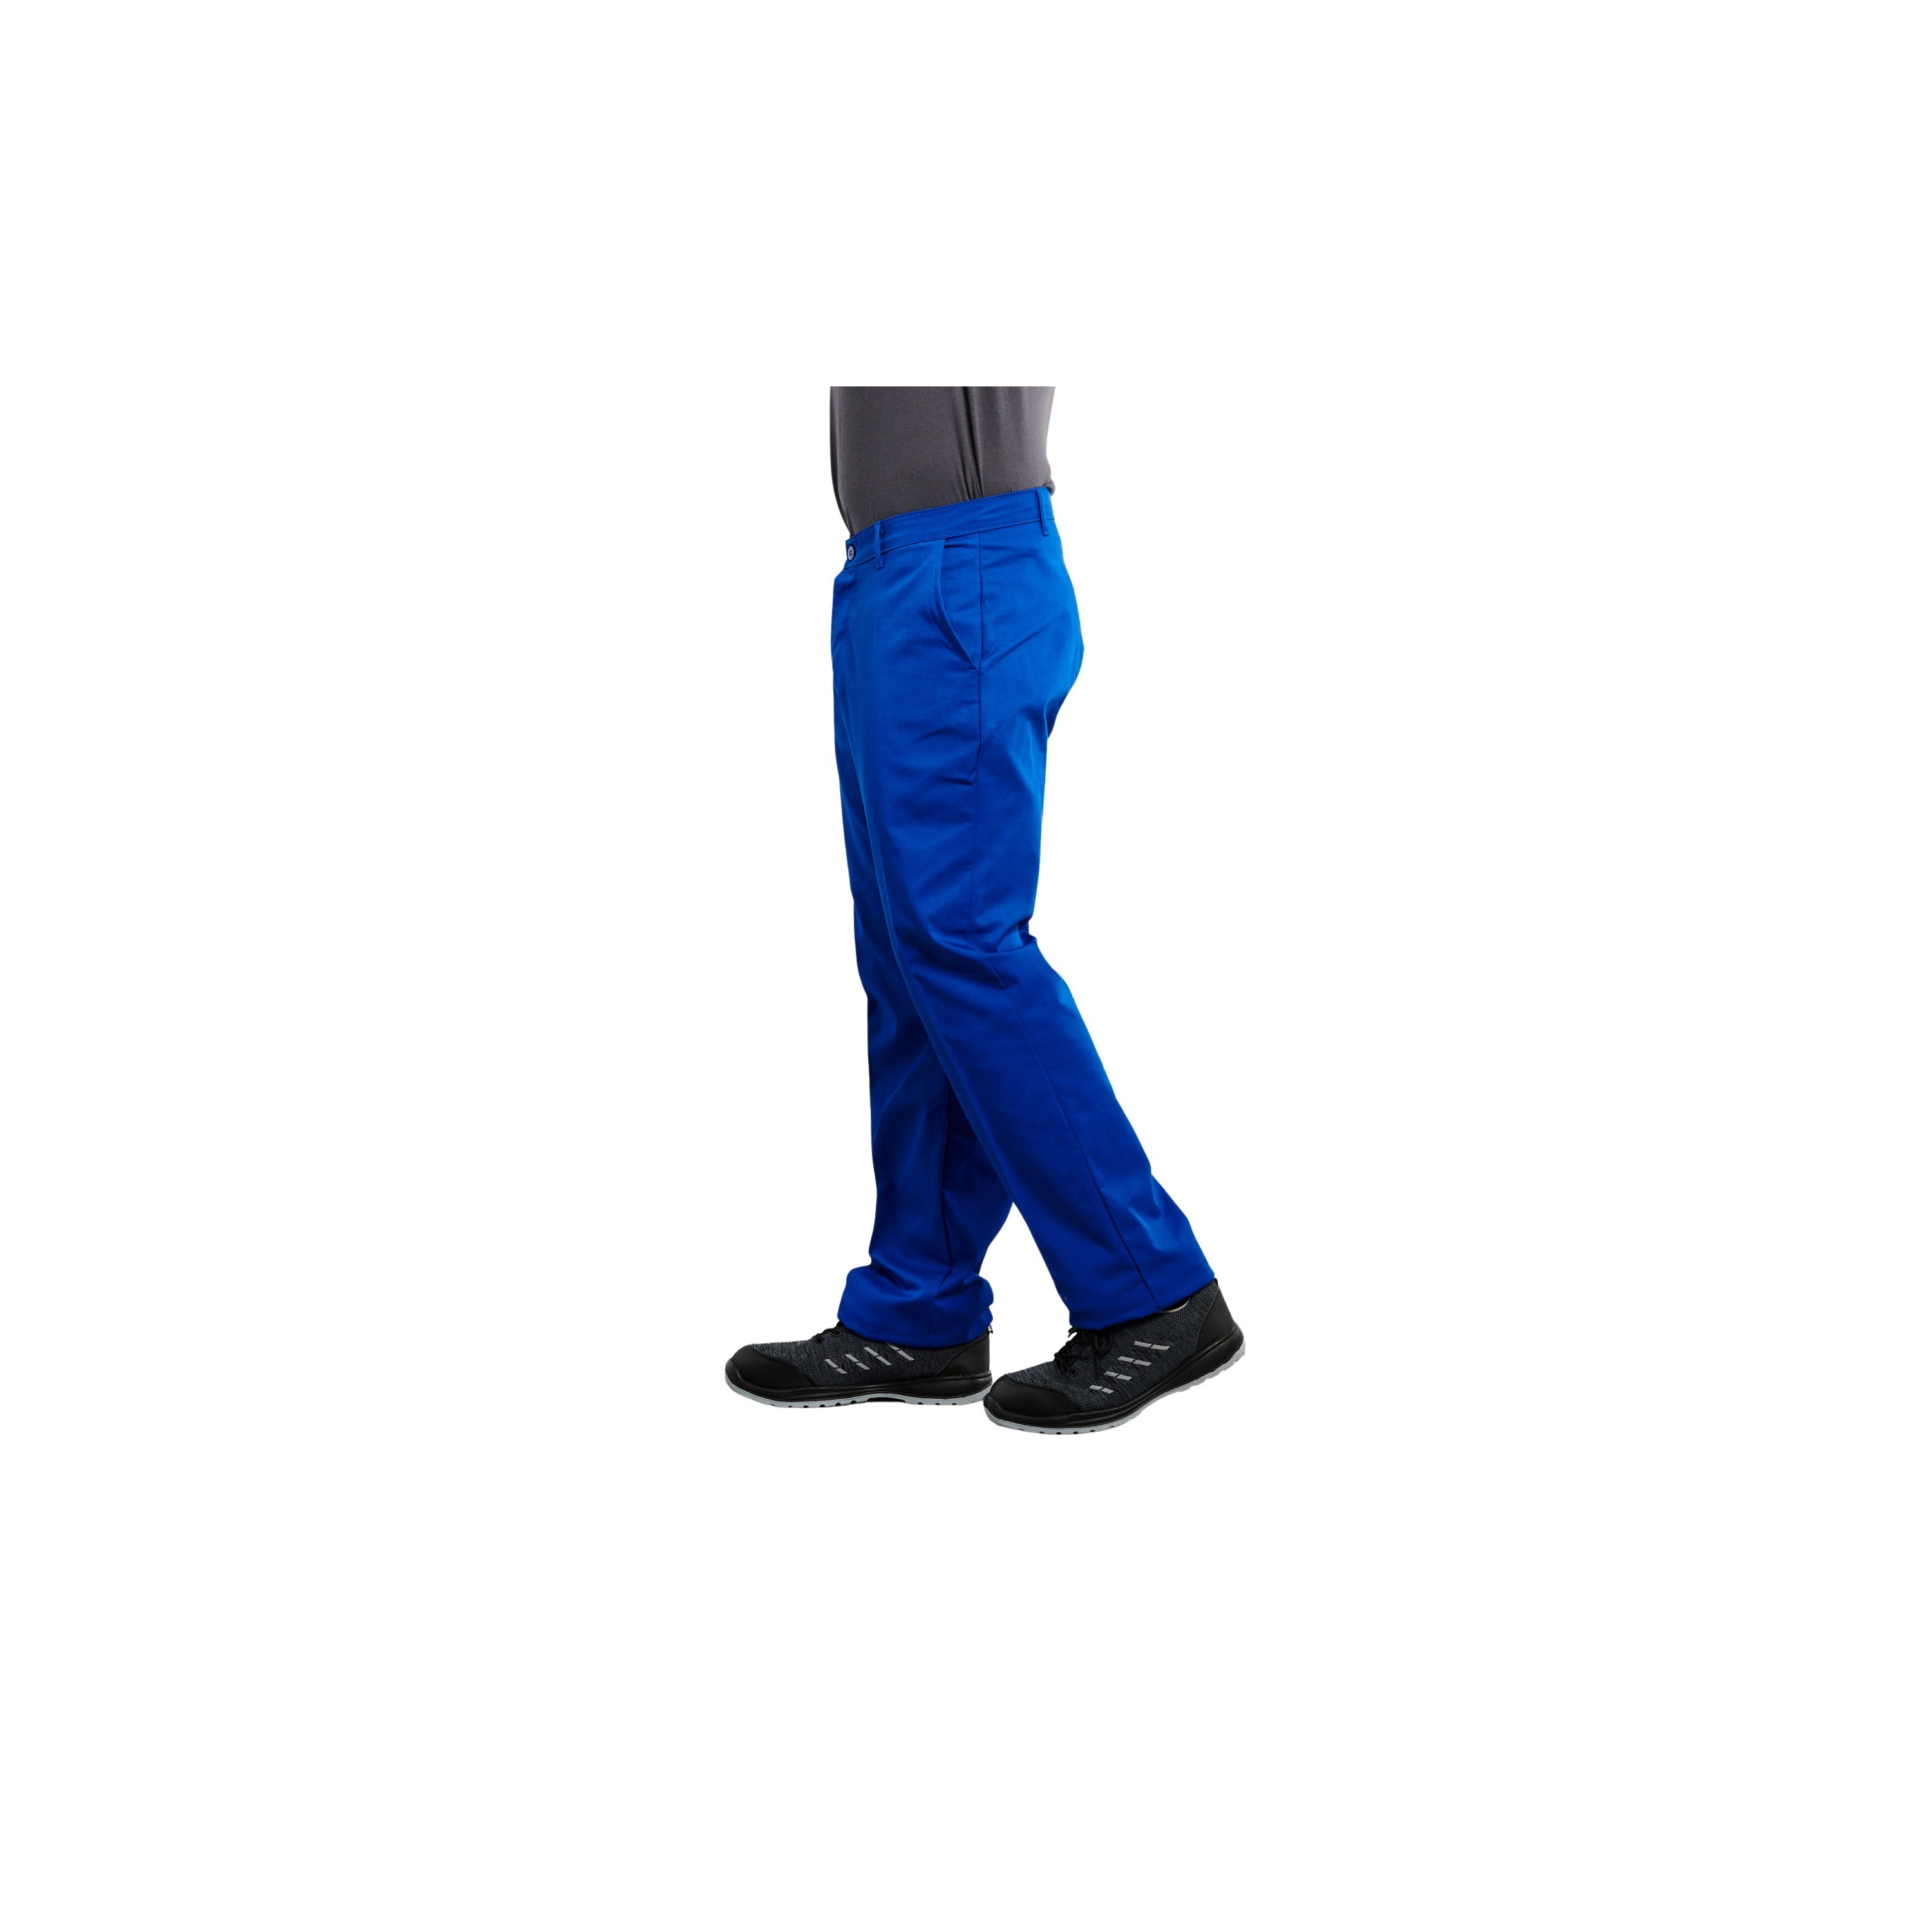 Pantalon de travail polycoton Bleu pas cher